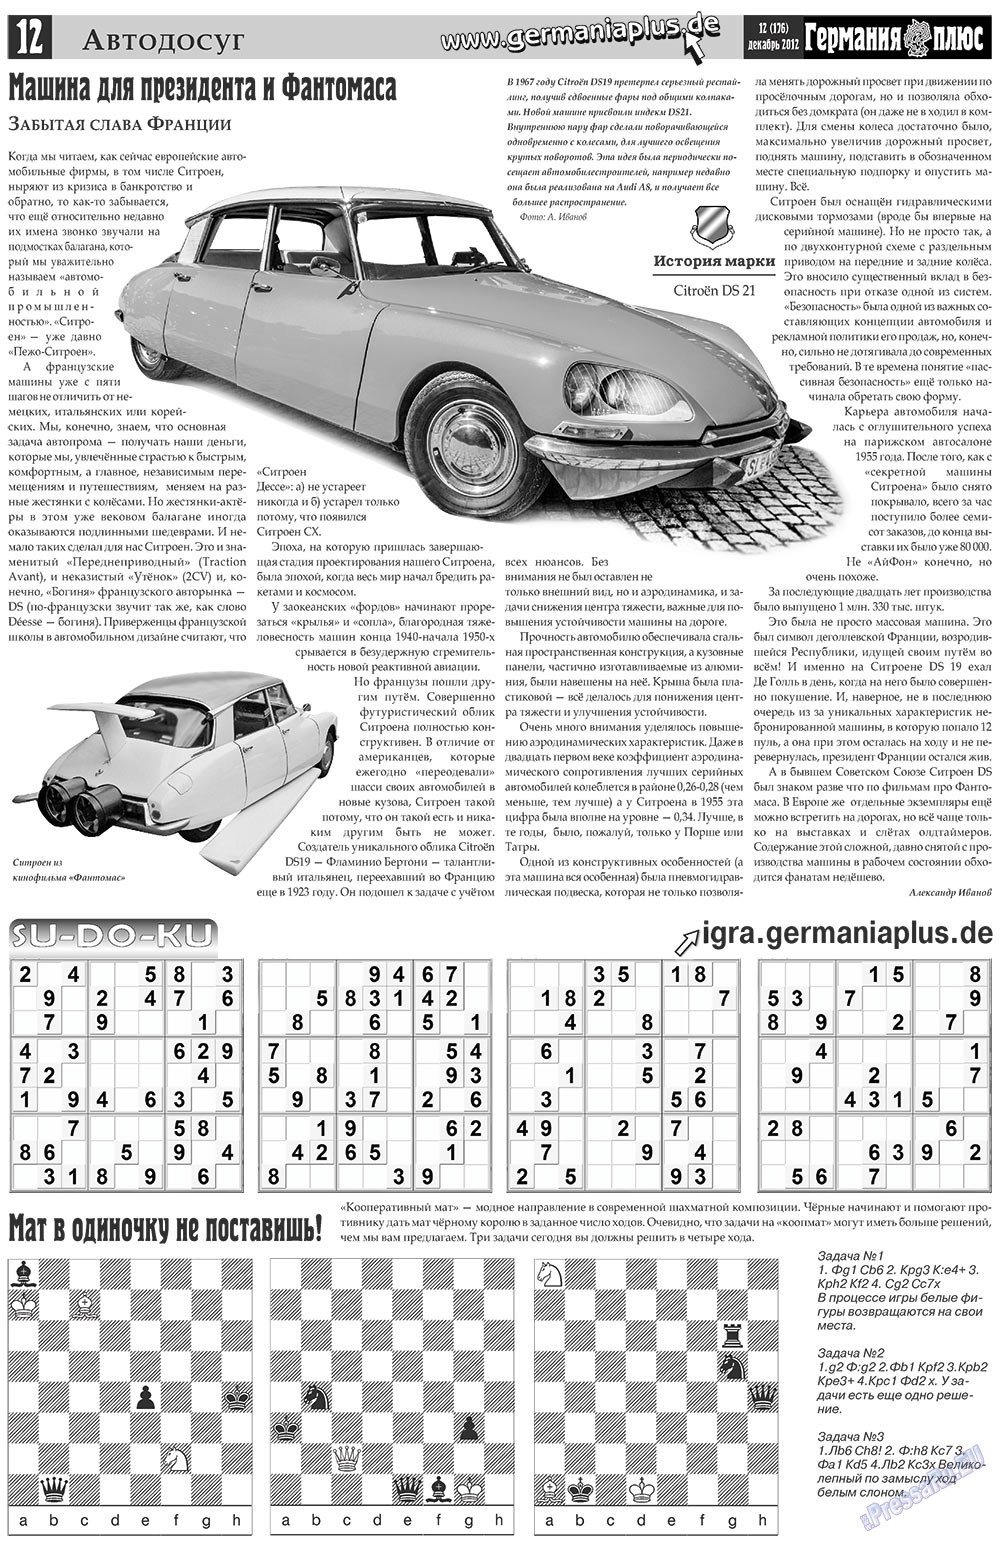 Германия плюс, газета. 2012 №12 стр.12